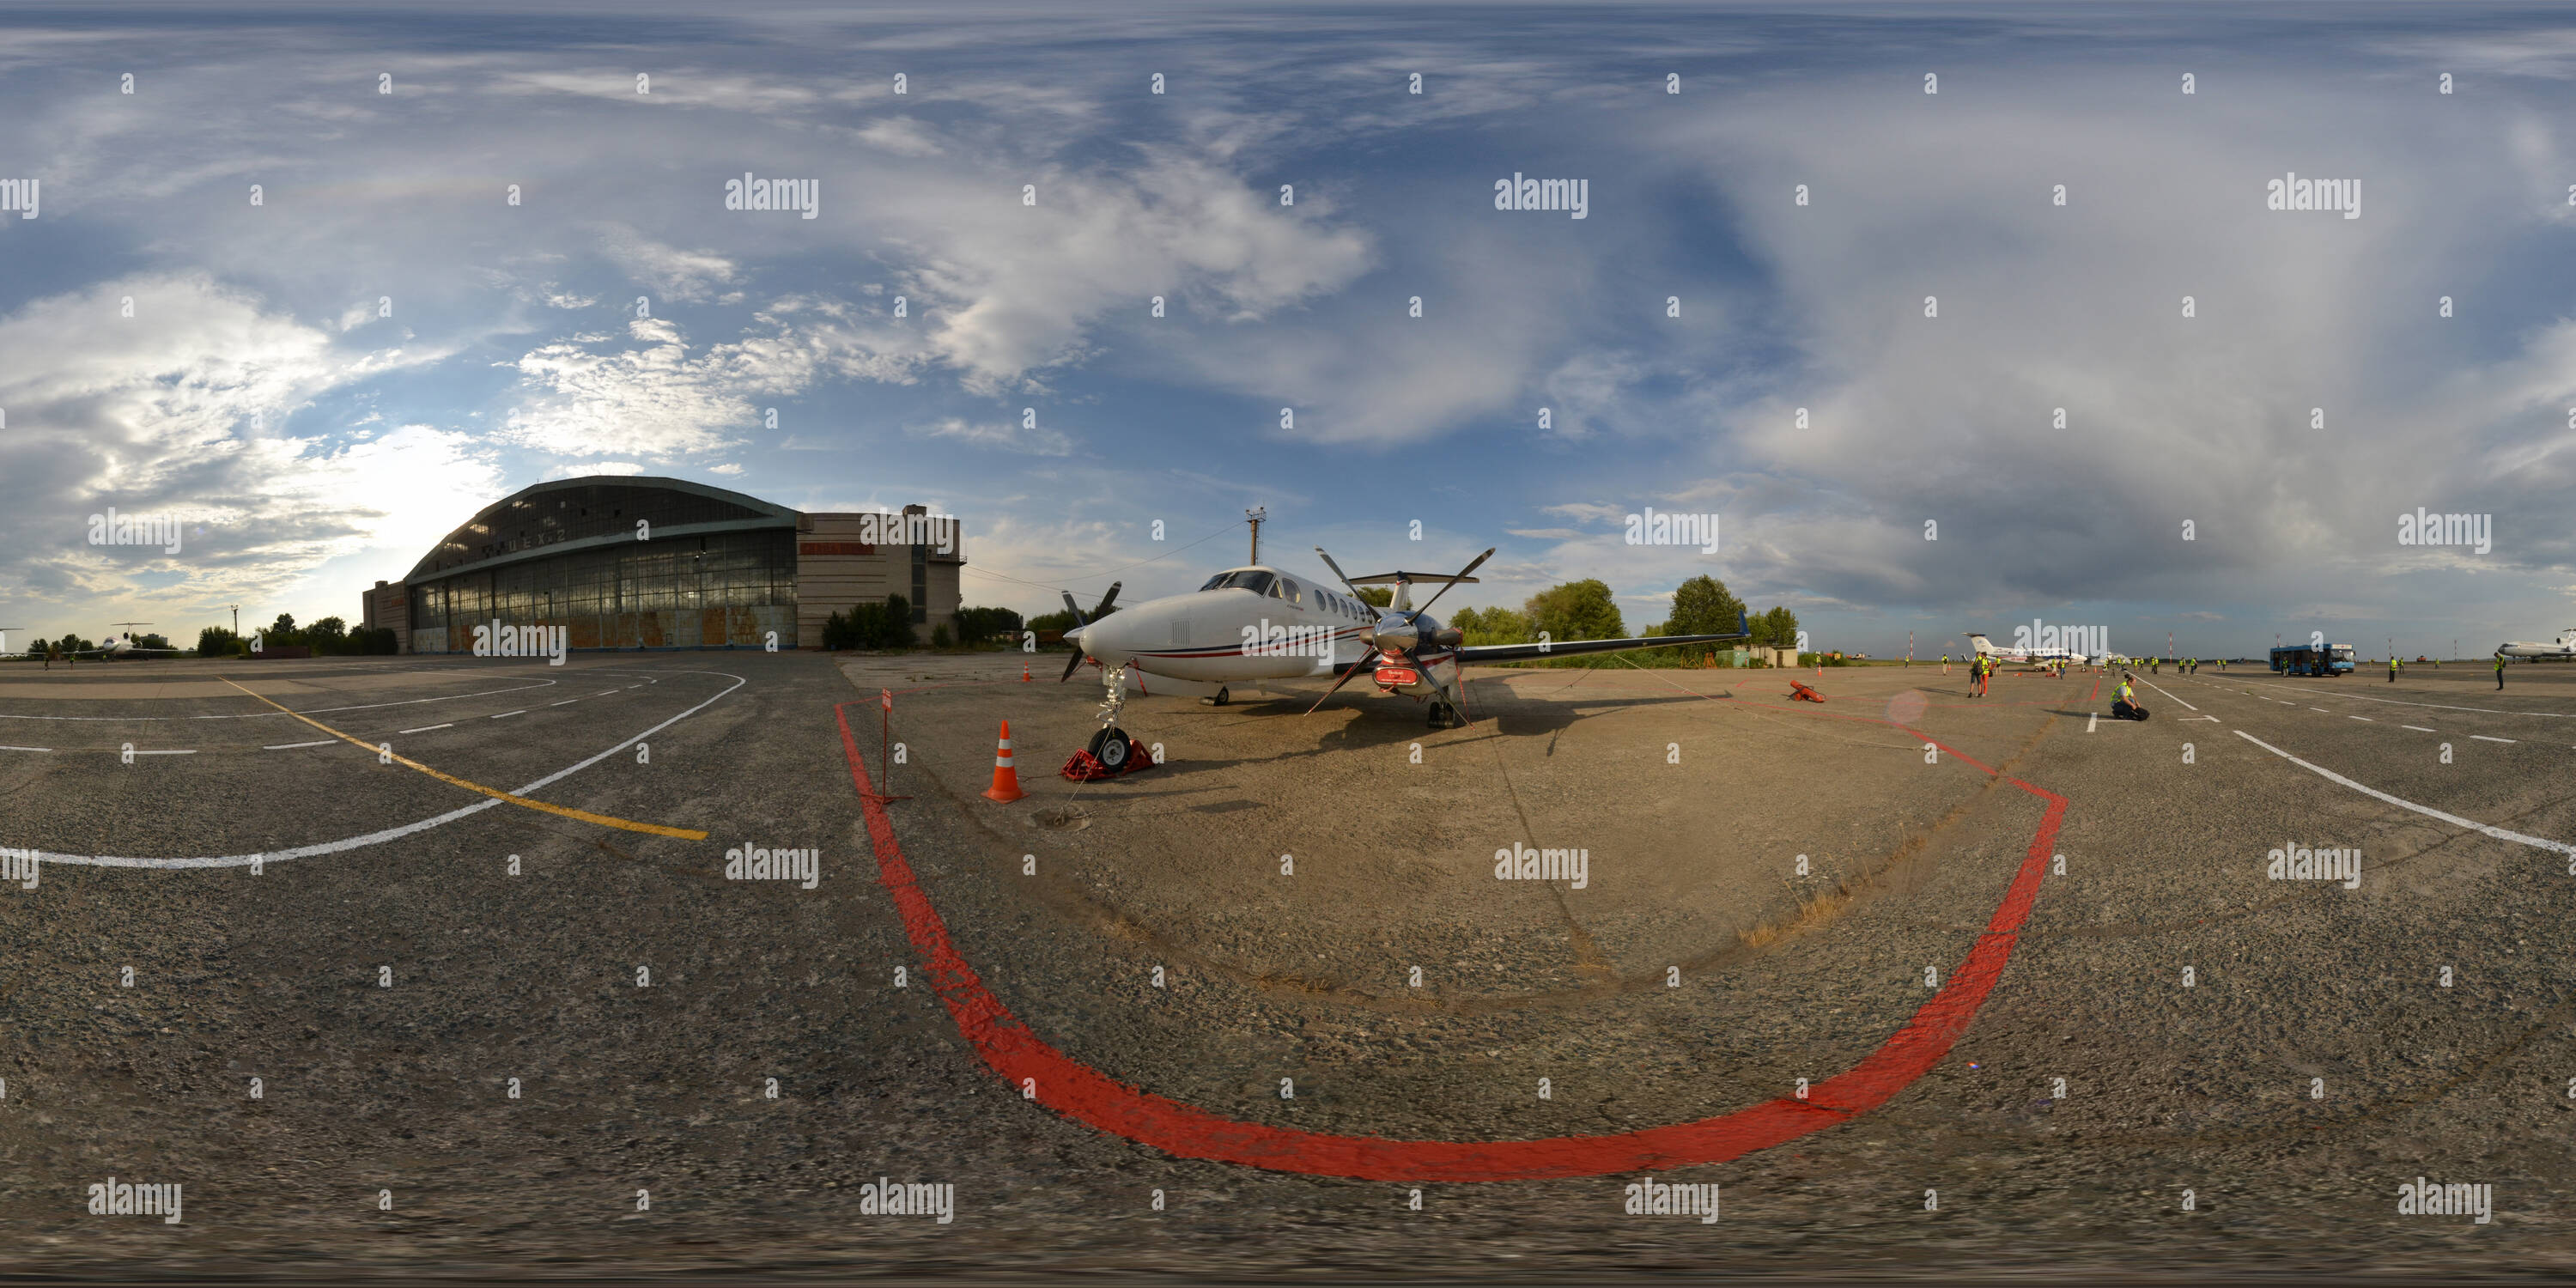 360 degree panoramic view of Samara Kurumoch International Airport production workshop-3